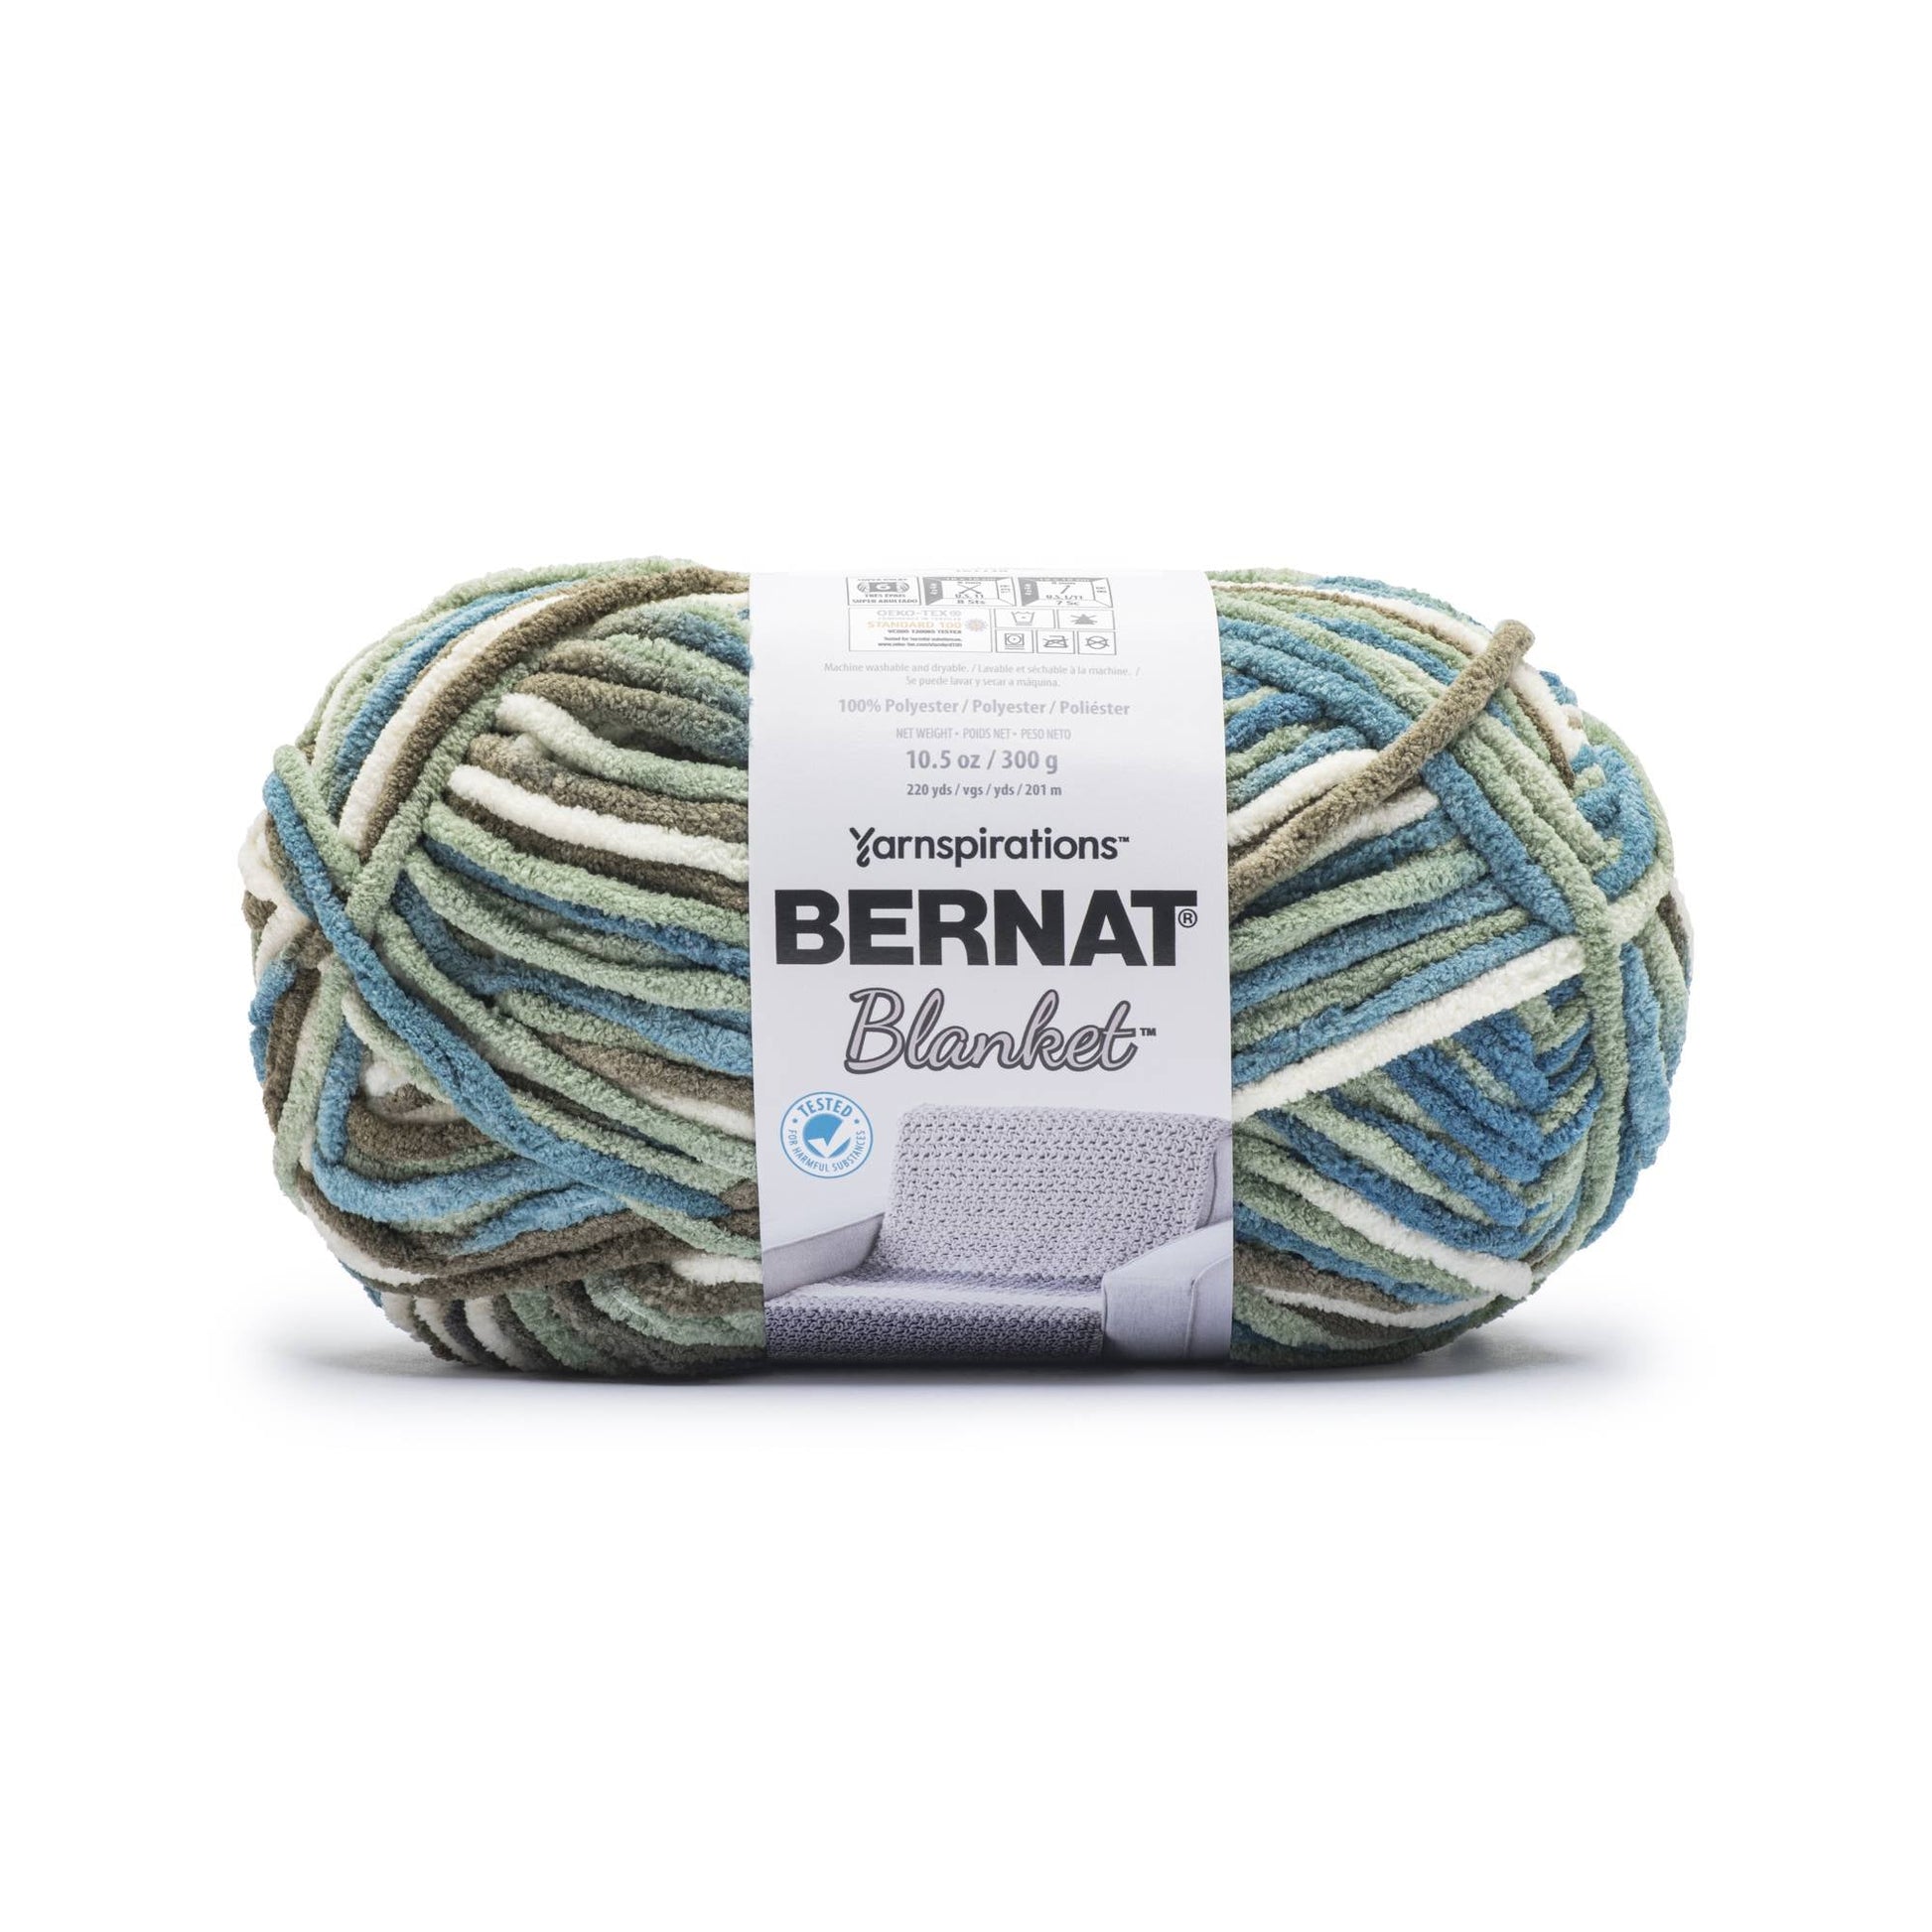 Bernat Blanket Yarn (300g/10.5oz) Mossy Medley